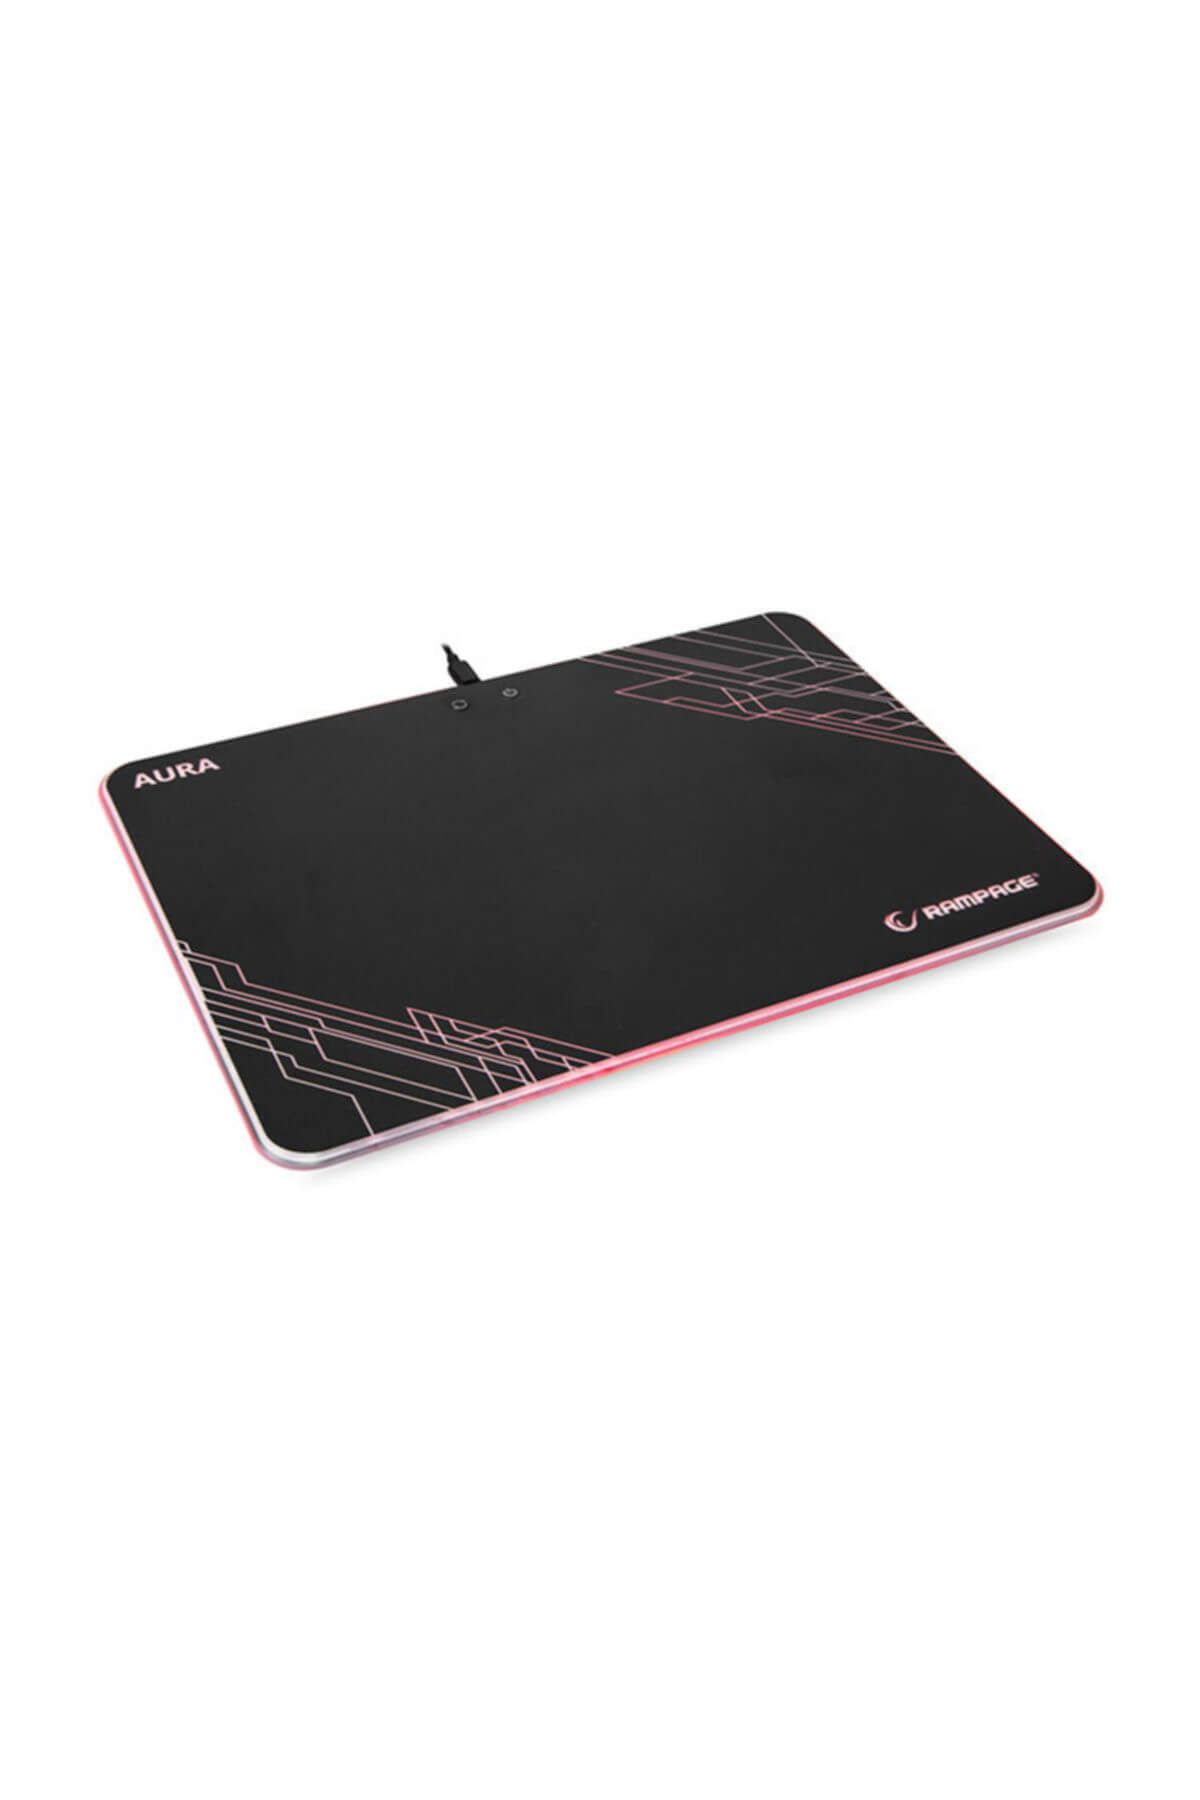 Rampage Tasarımlı 360x260x5mm RGB Gaming Mouse Pad (TKZ)